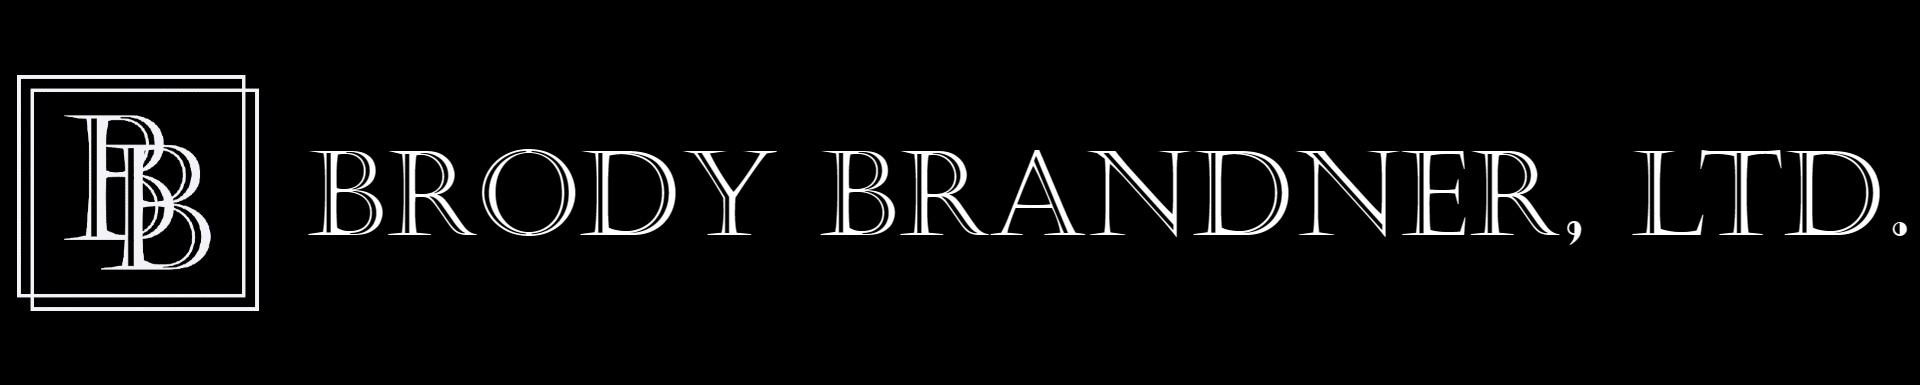 Brody Brandner, Ltd.